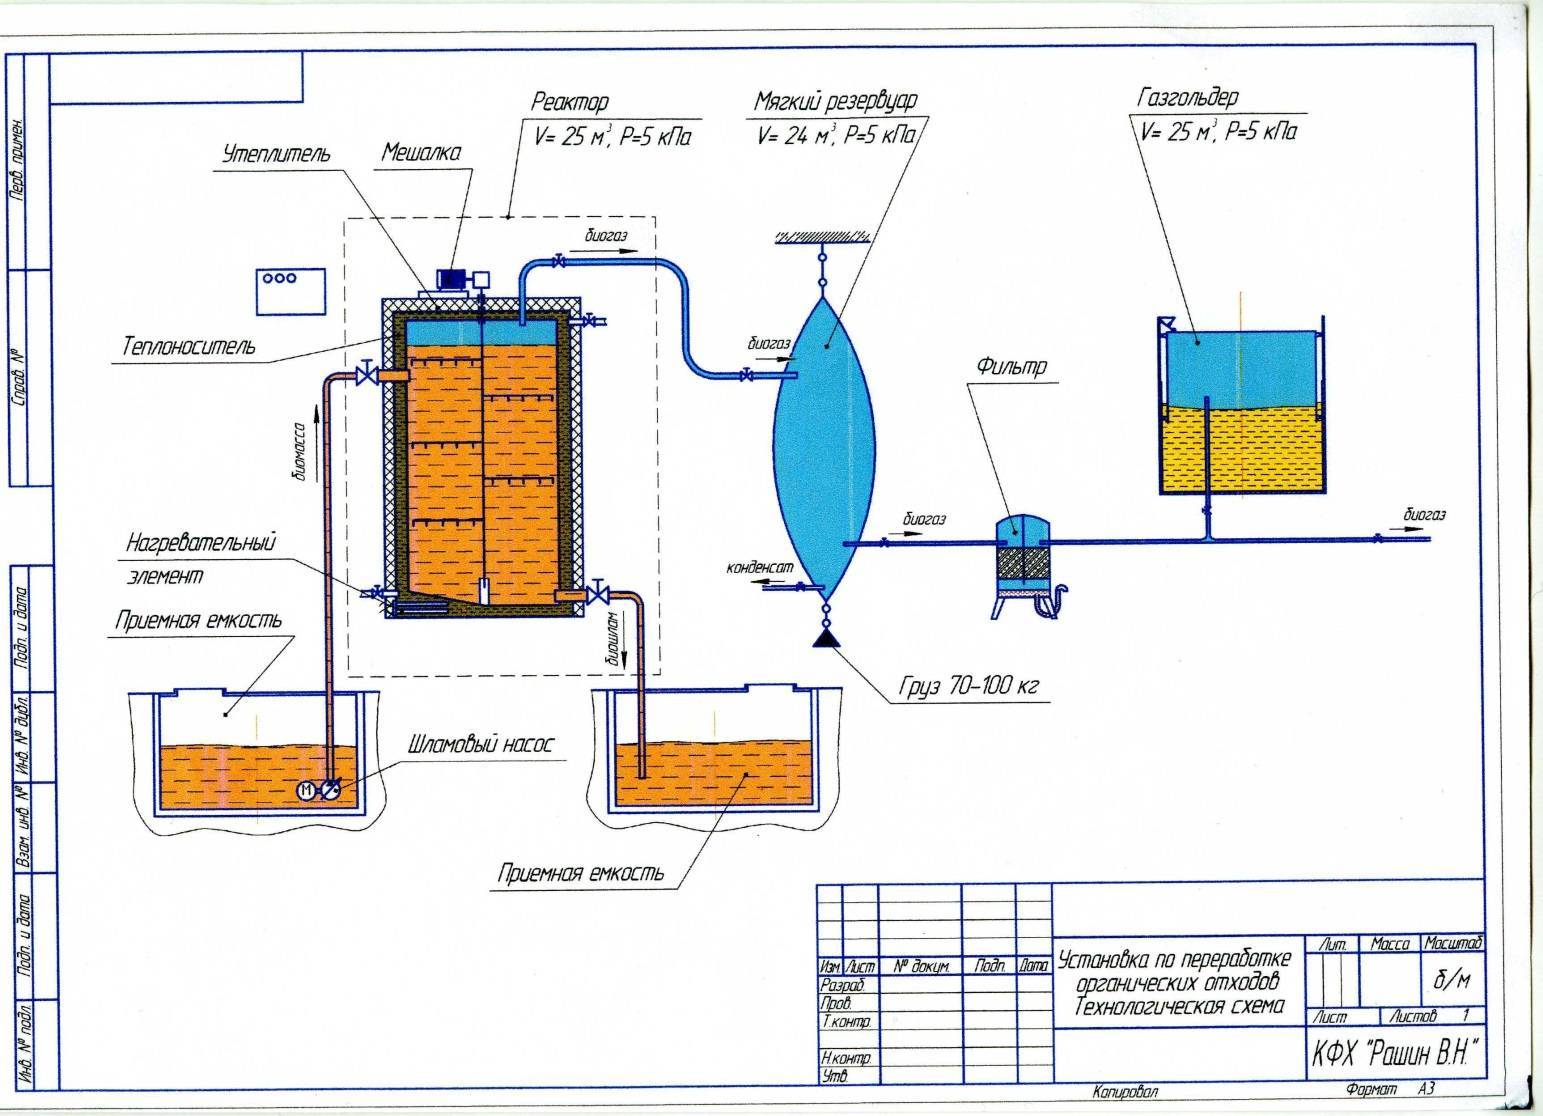 Как получить биогаз из навоза: технология и устройство установки по